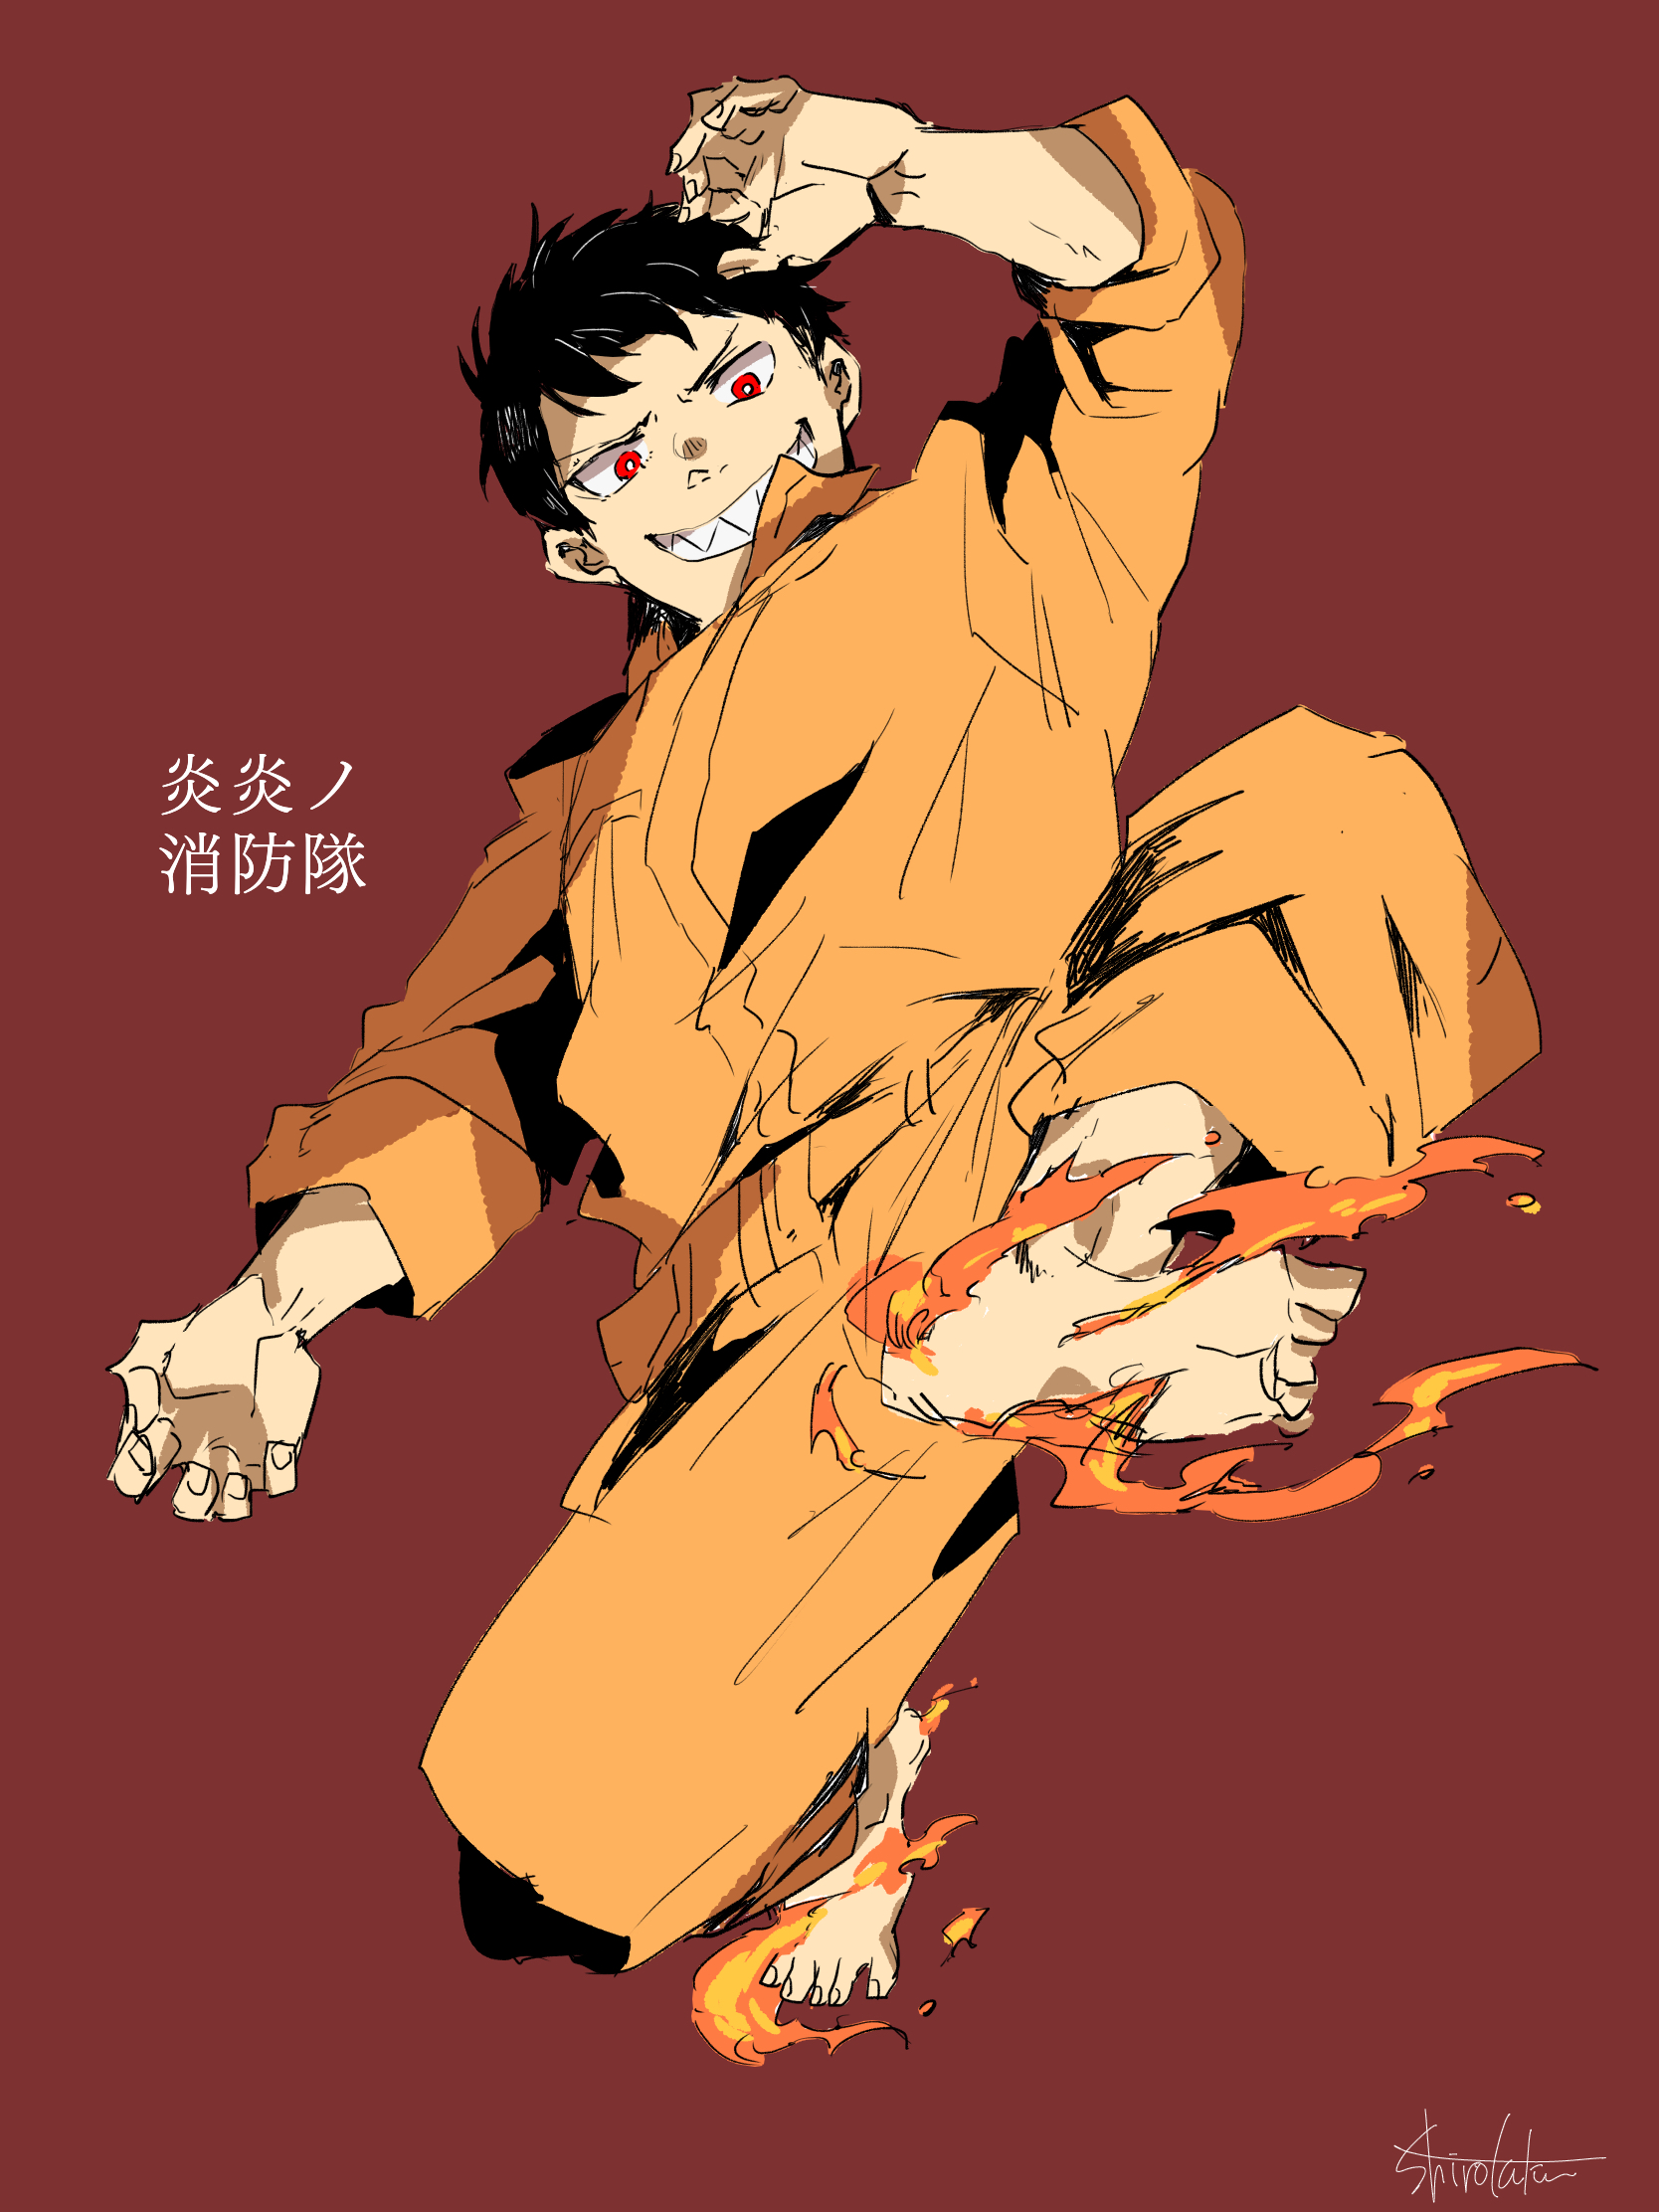 Enen no Shouboutai (Fire Force) Anime Image Board